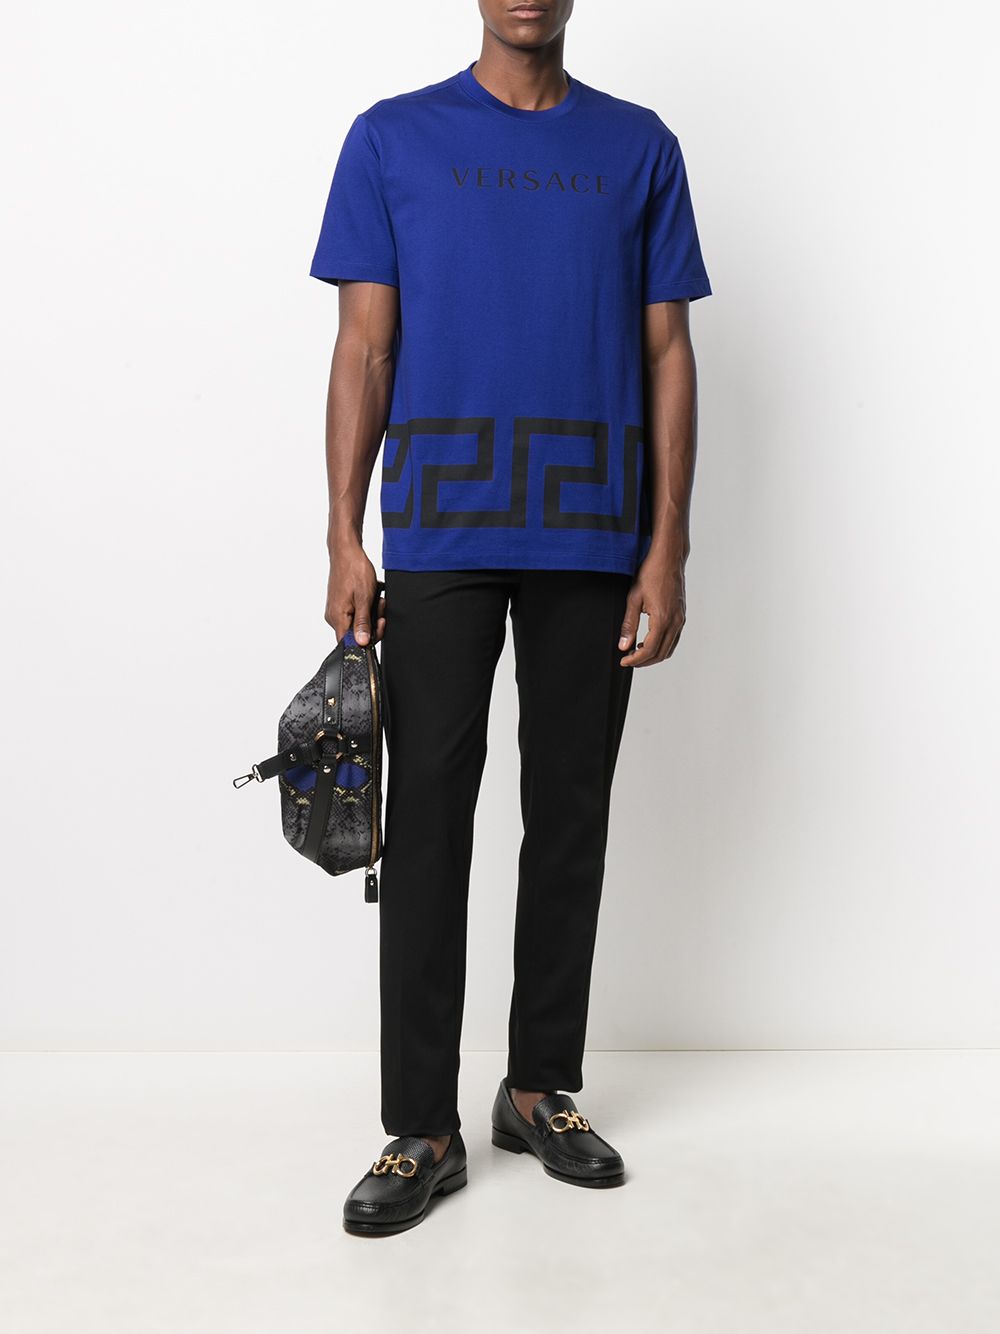 фото Versace брюки строгого кроя с вышитым логотипом